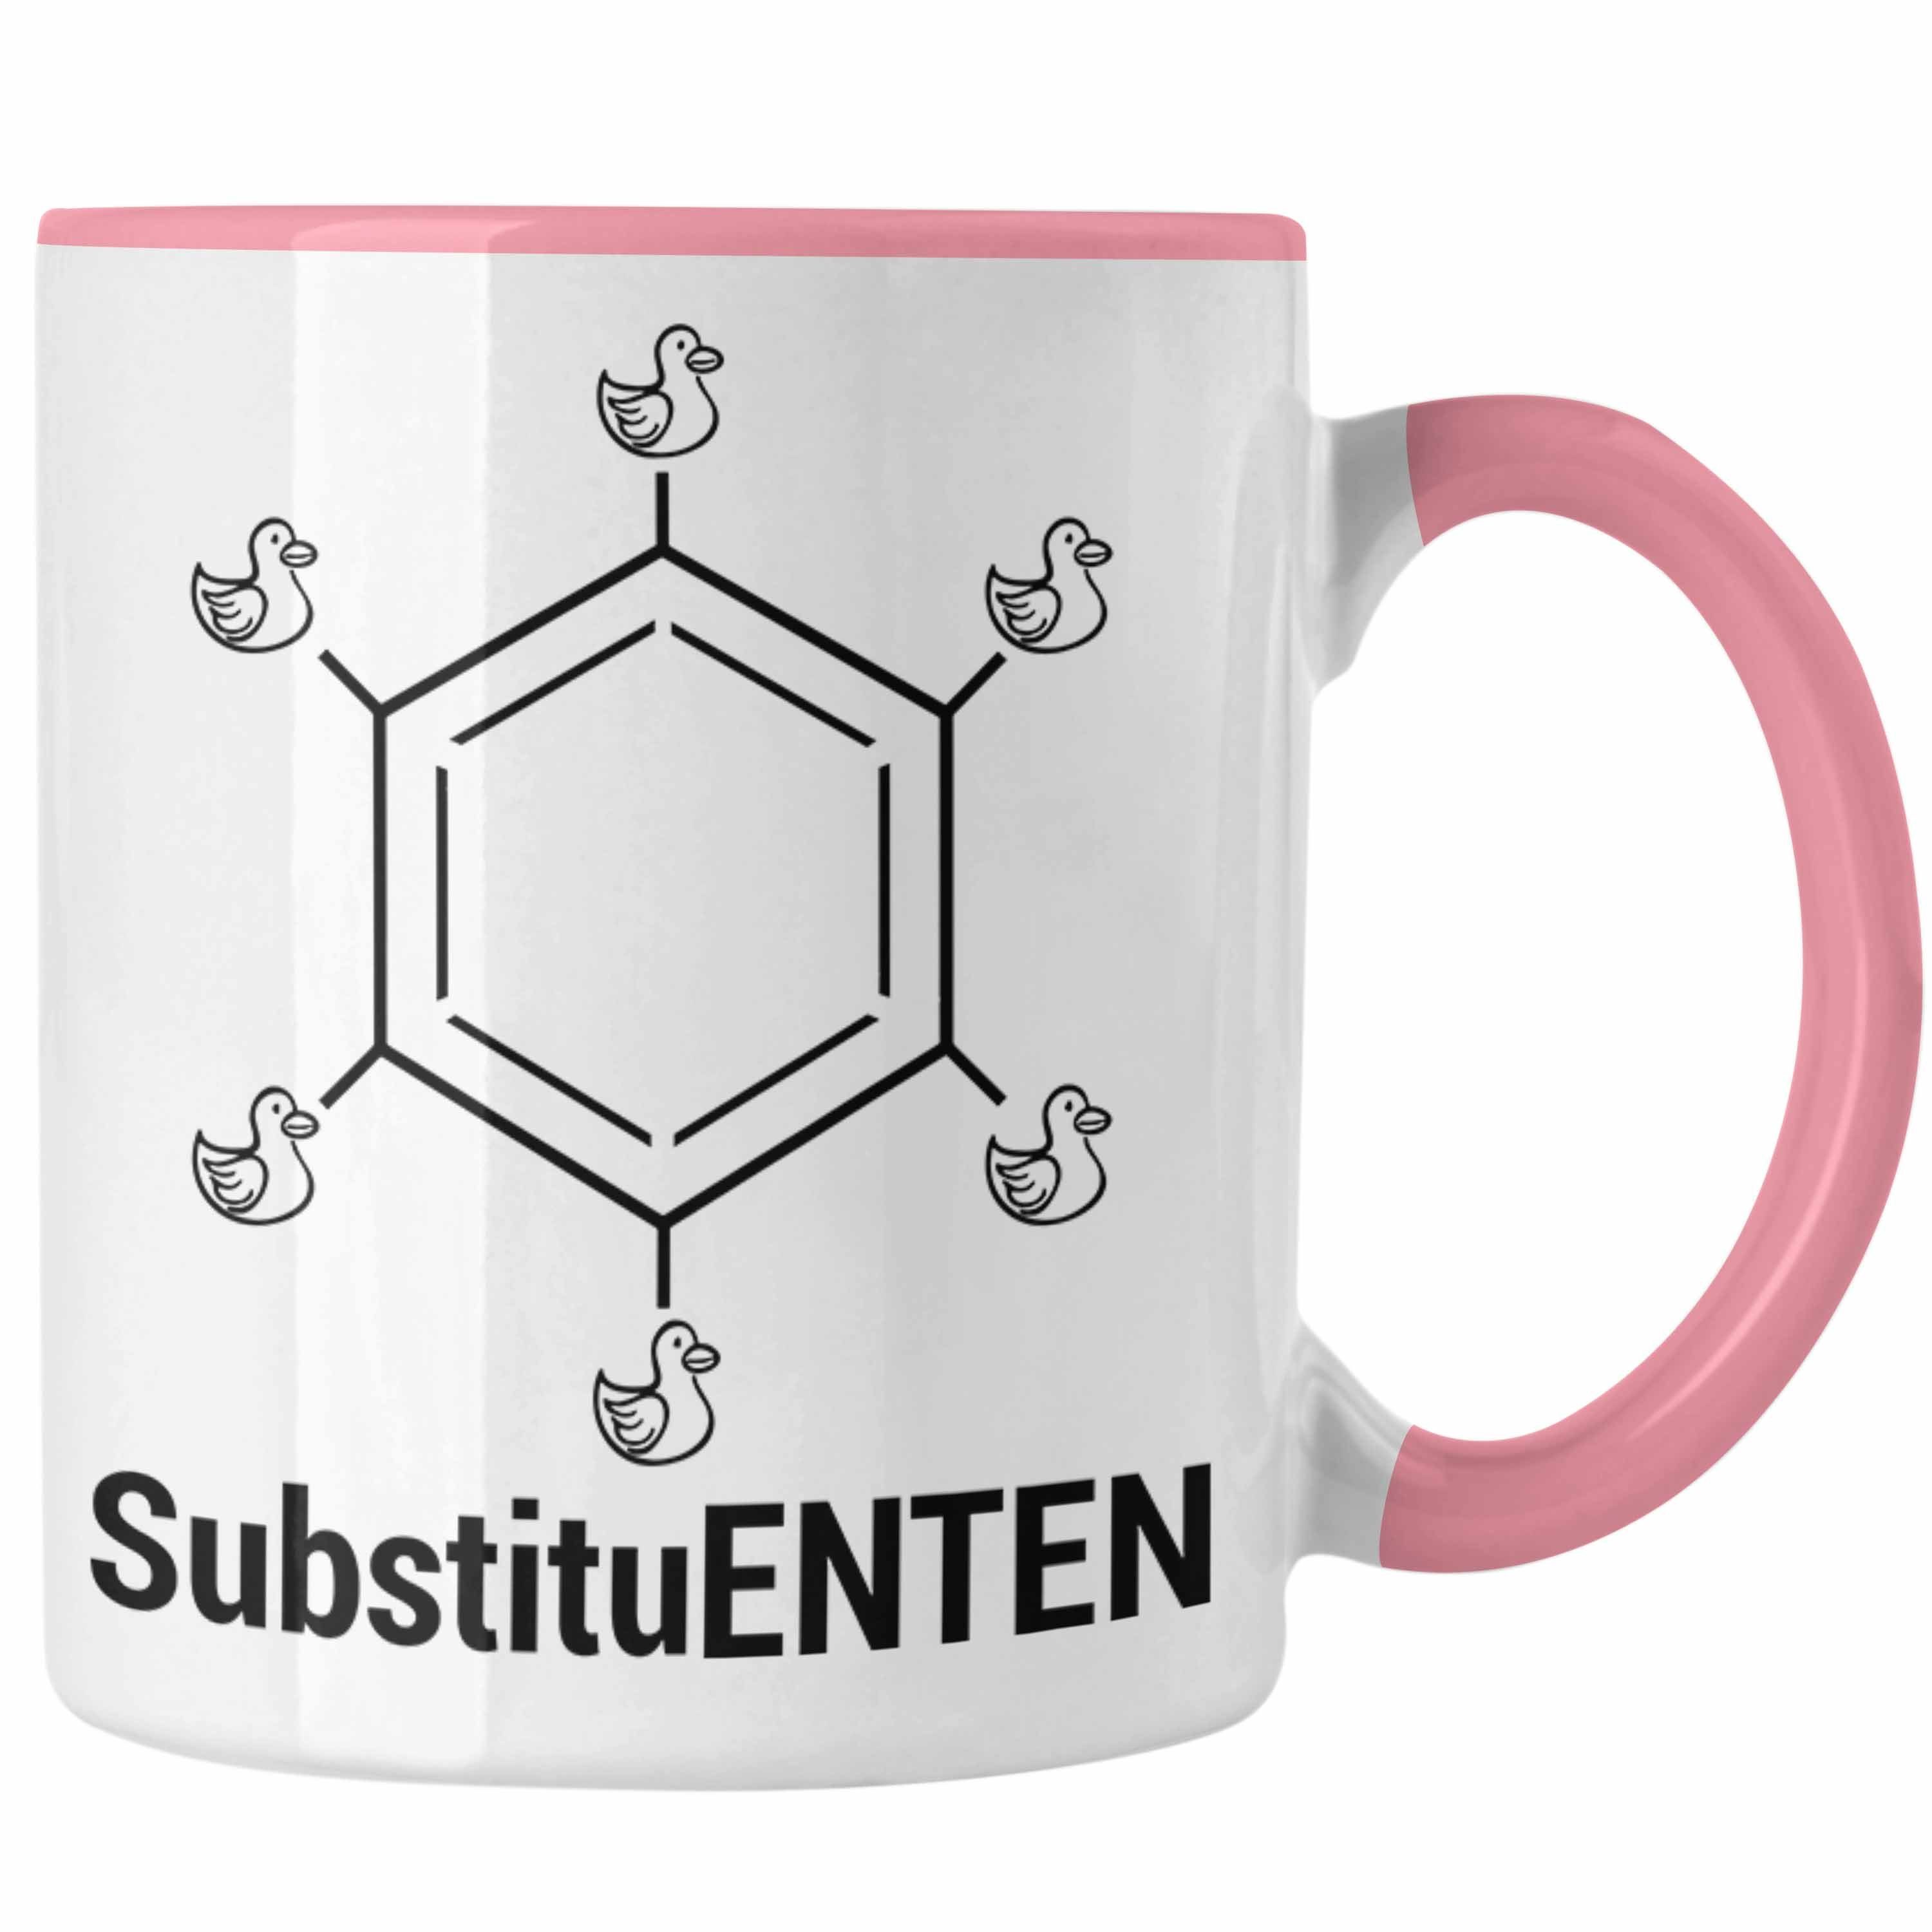 Trendation Tasse Chemie Tasse SubstituENTEN Chemiker Witz Organische Chemie Ente Kaffee Rosa